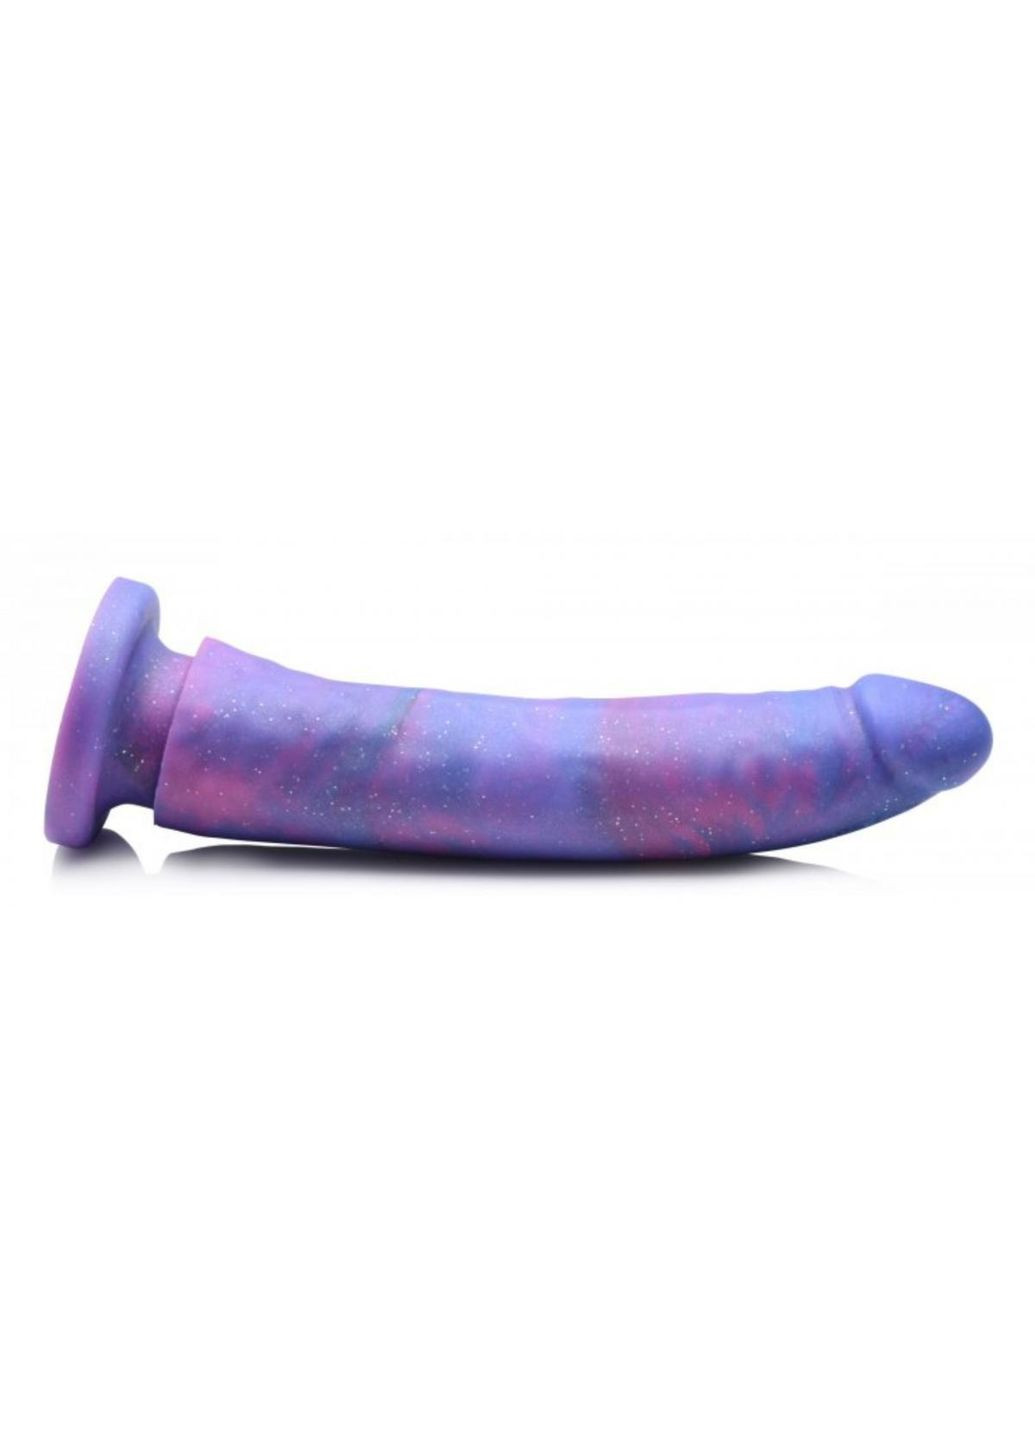 Фаллоимитатор реалистичный, с блестками, фиолетовый, 20.3 см Strap U (297132322)